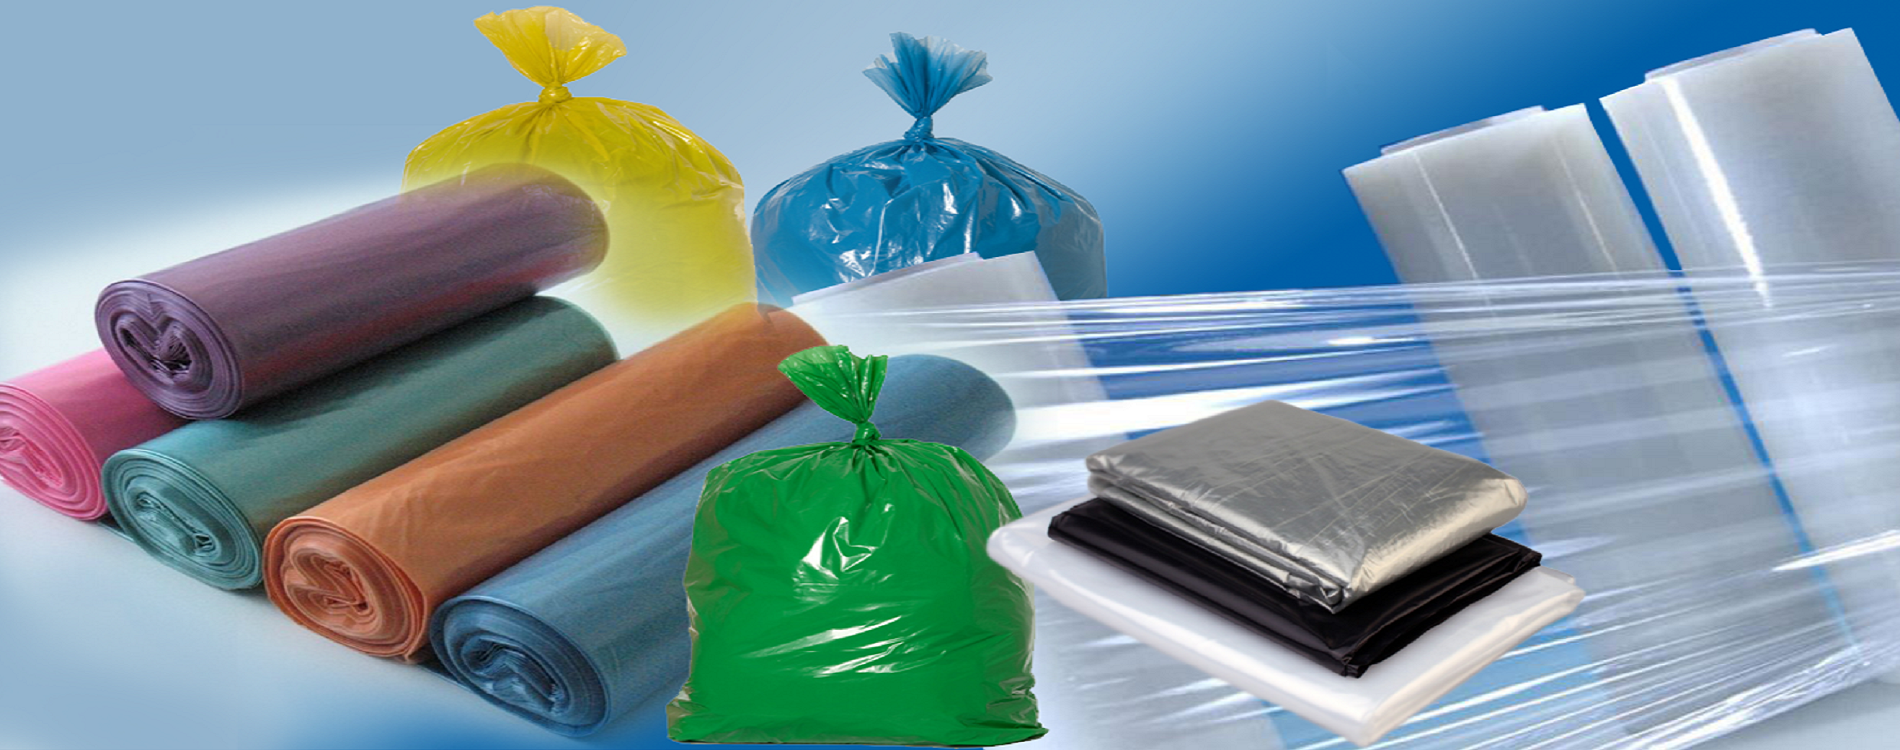 Полиэтилен примеры. Полиэтилен изделия. Упаковочный материал полиэтилен. Пакеты из полиэтиленовой пленки. Синтетические упаковочные материалы.